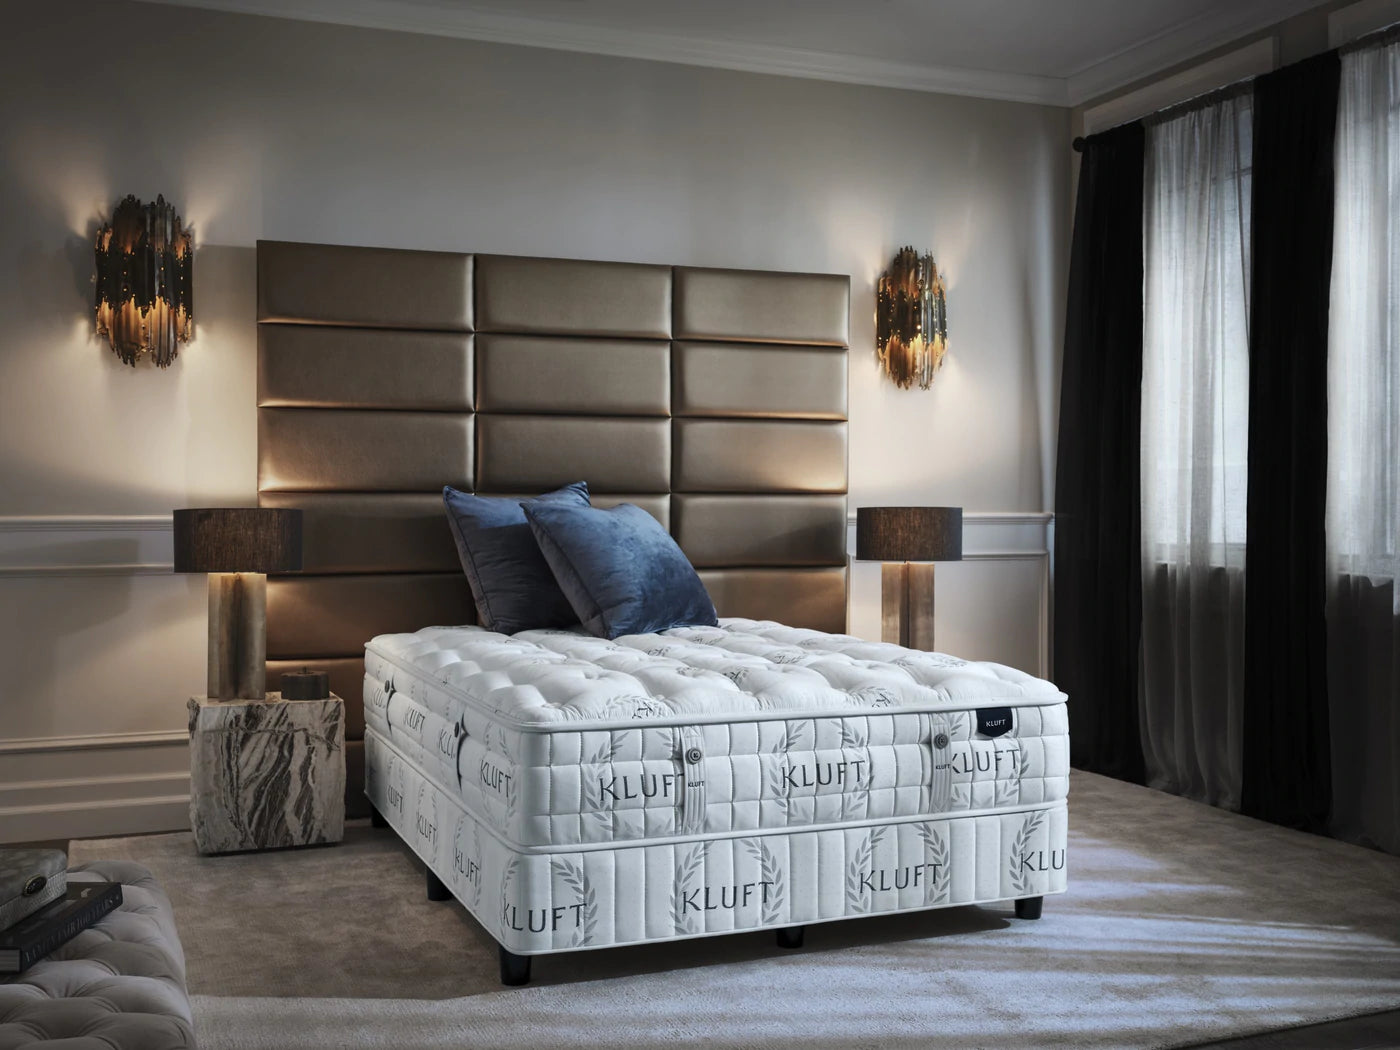 kluft luxury bed in bedroom